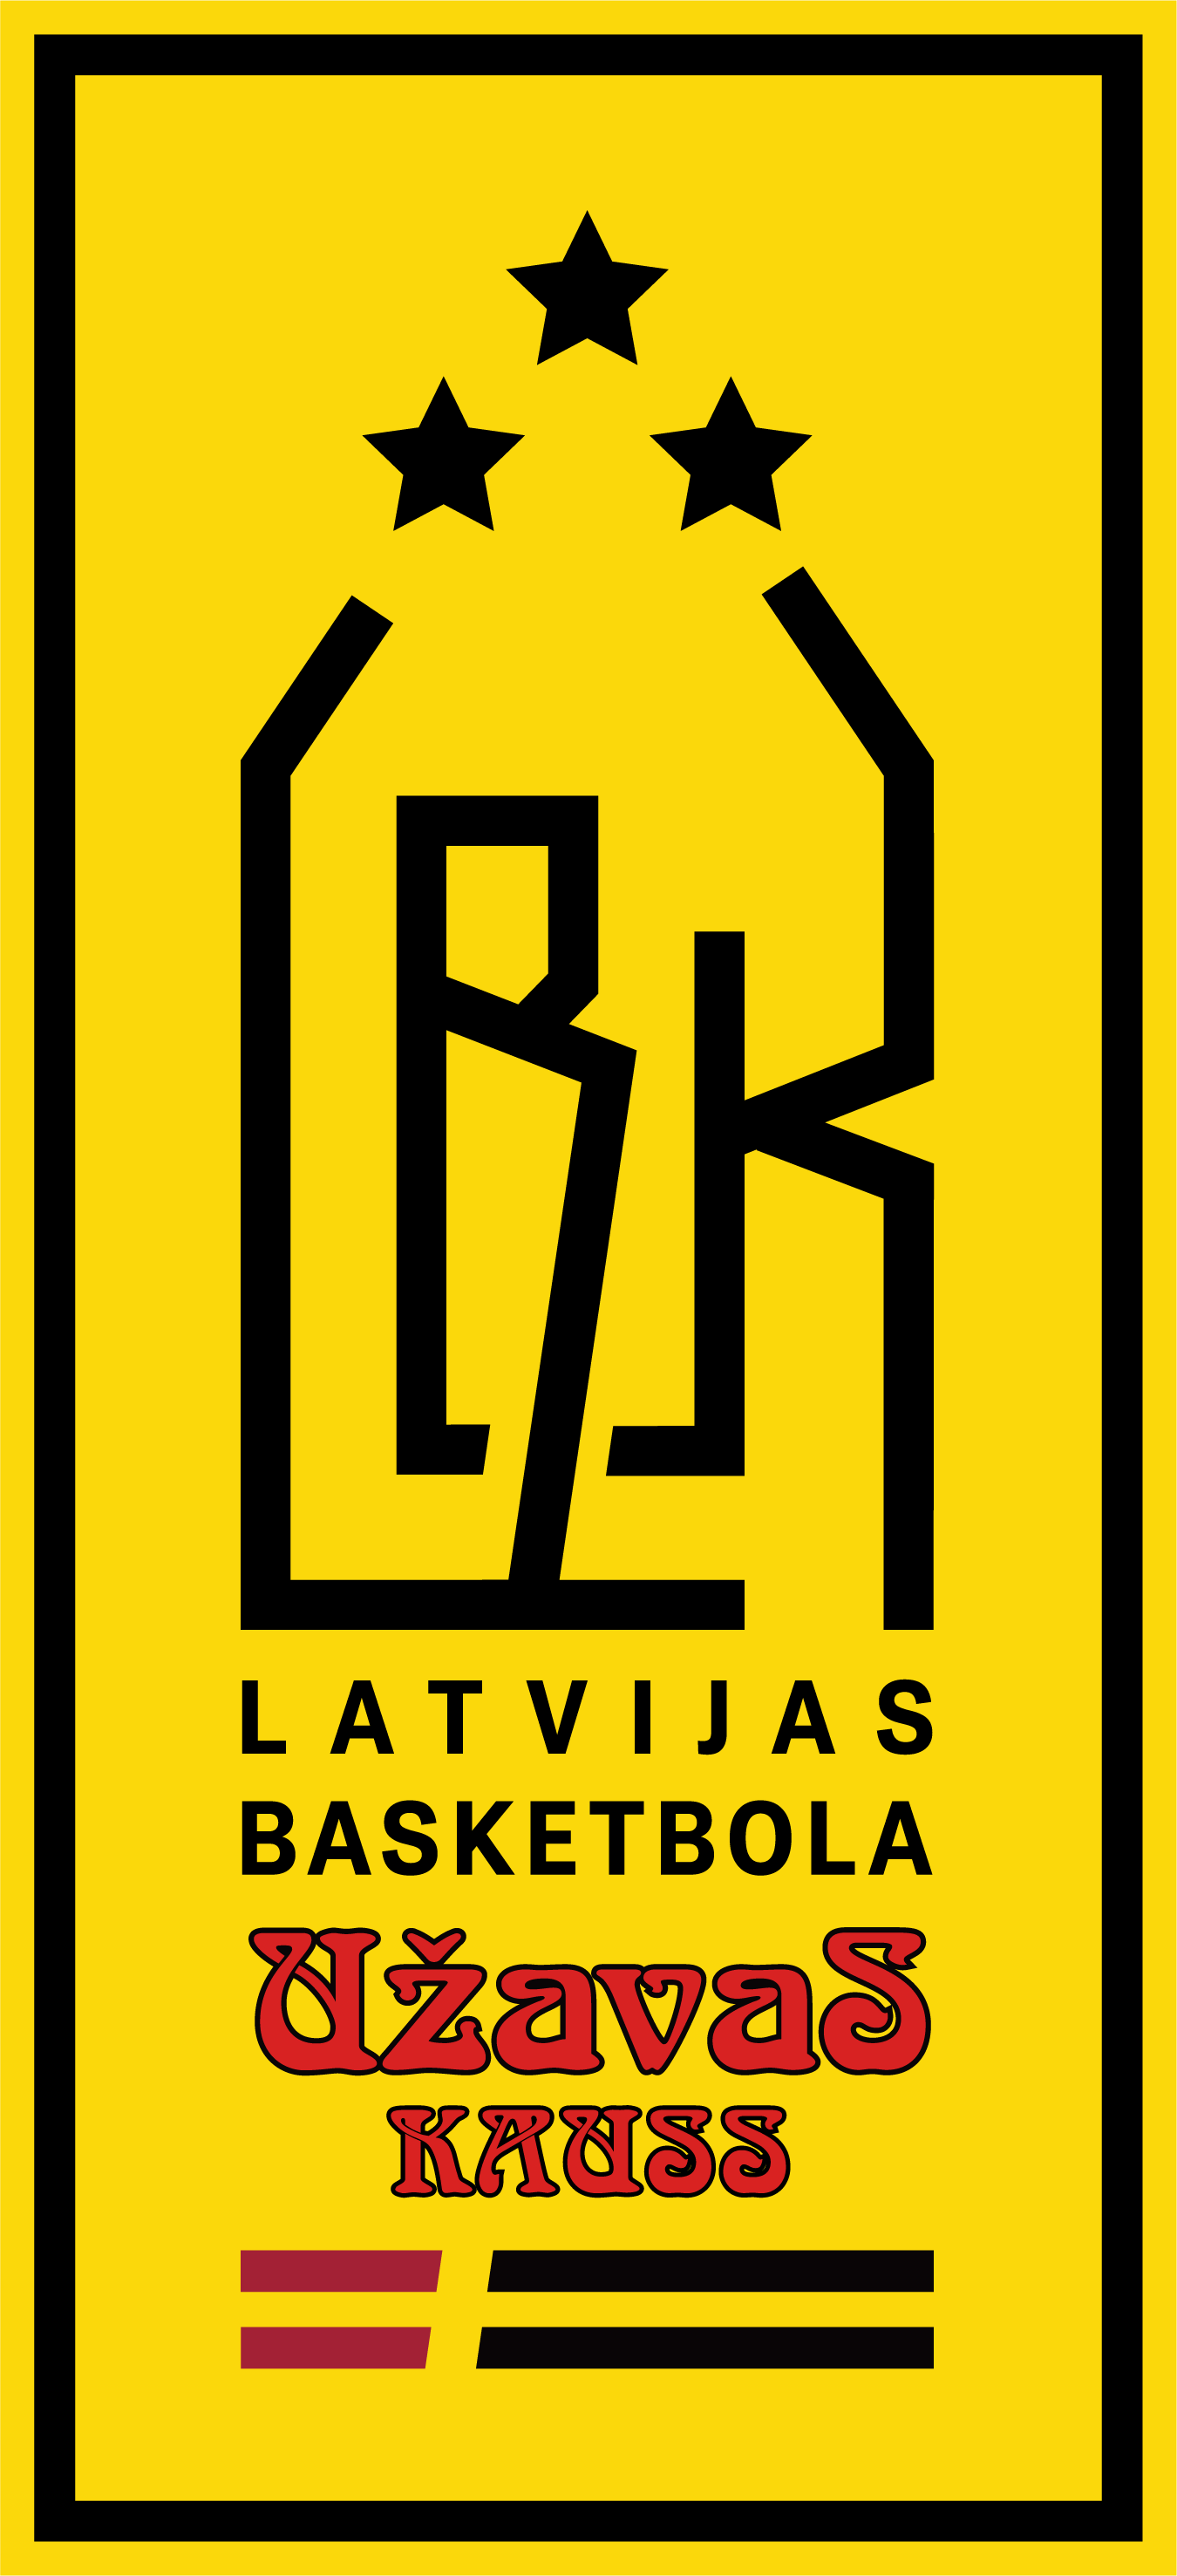 Latvijas basketbola Užavas kauss: atklāšanas spēle 18. oktobrī Siguldā, zināmi komandu pāri